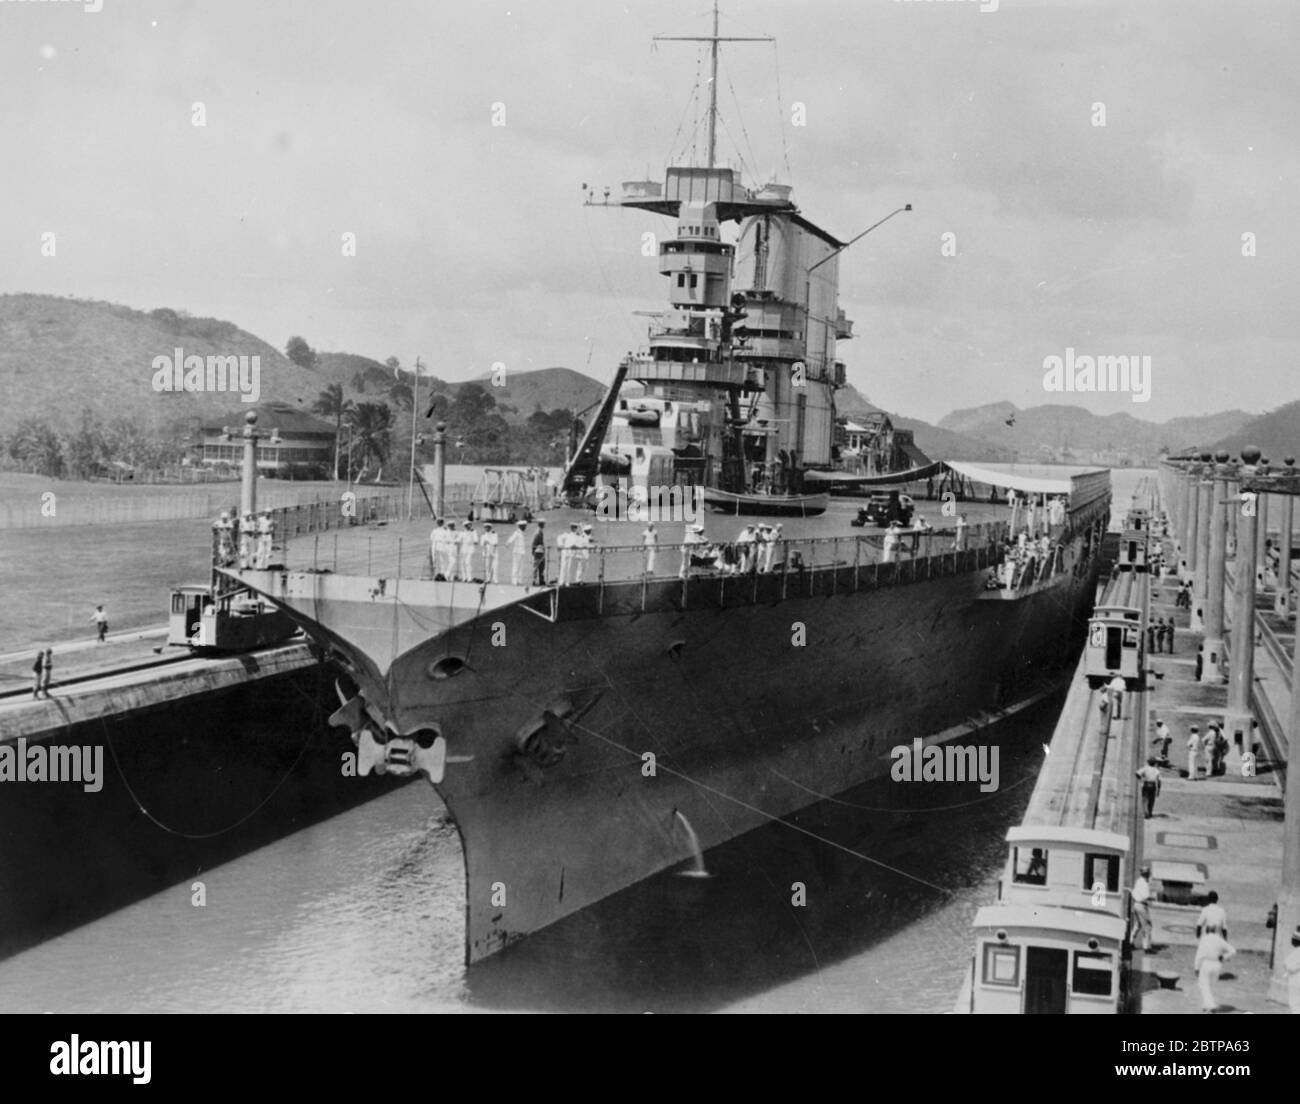 Ein enger Druck. Die USS Saratoga (CV-3) die US Navy ' s größte Schiff, und der größte Flugzeugträger der Welt, das größte Schiff jemals durch den Panama-Kanal gehen. 29 Februar 1928 Stockfoto